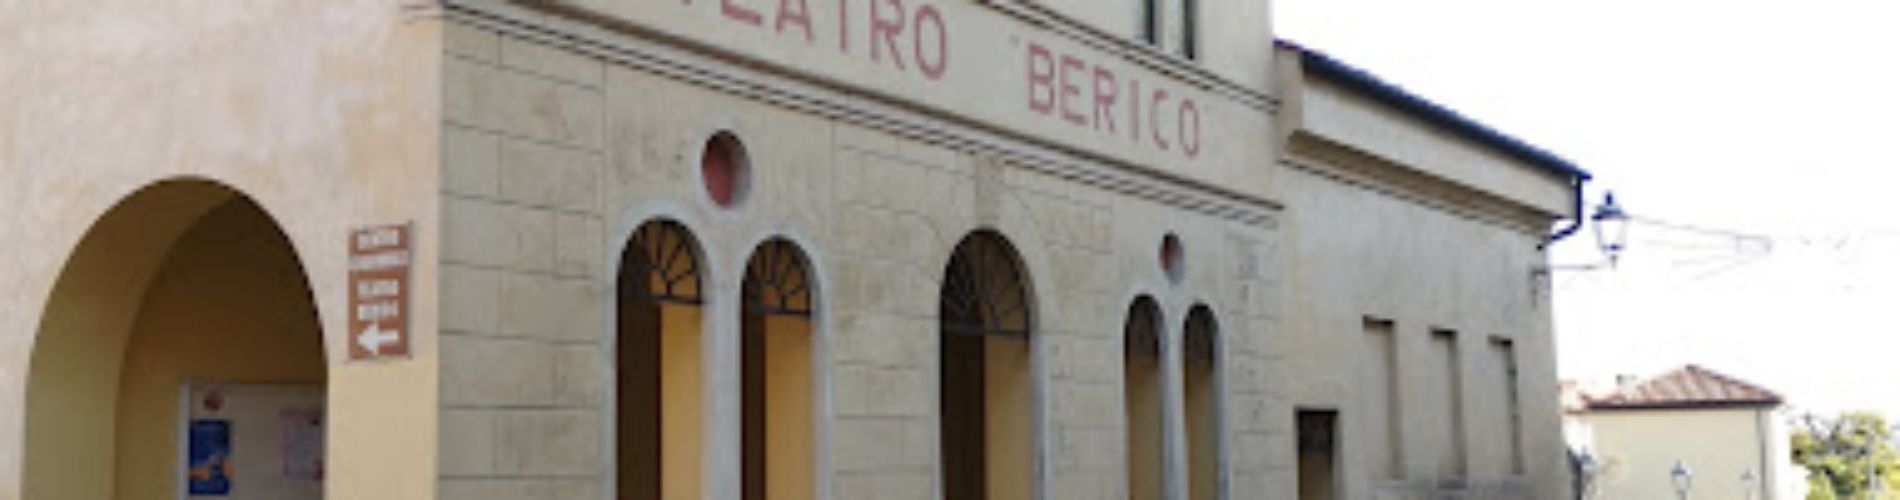 Teatro Berico